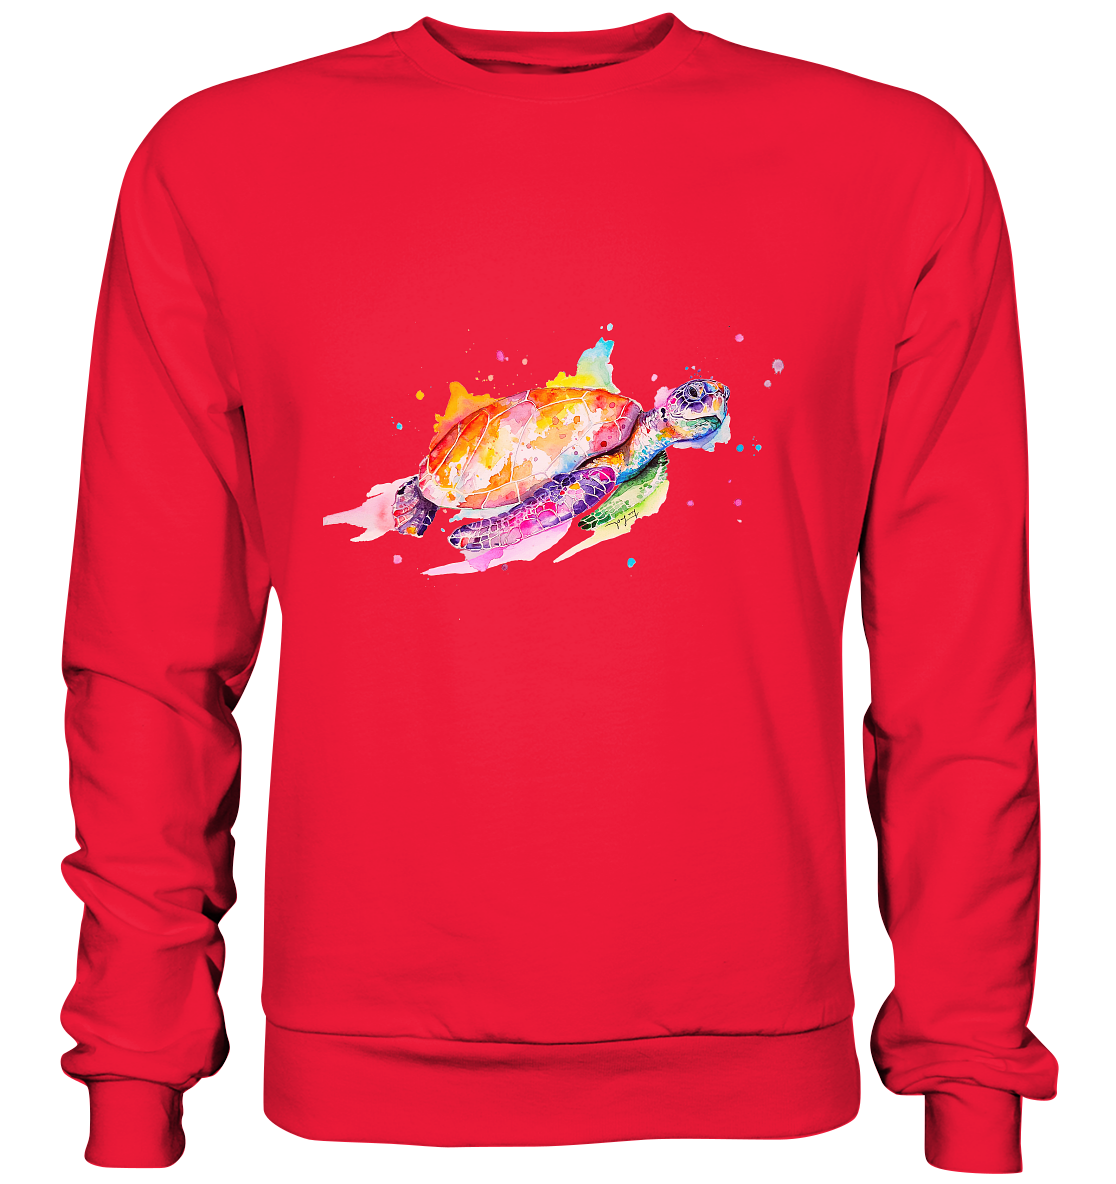 Bunte Meeresschildkröte - Premium Sweatshirt